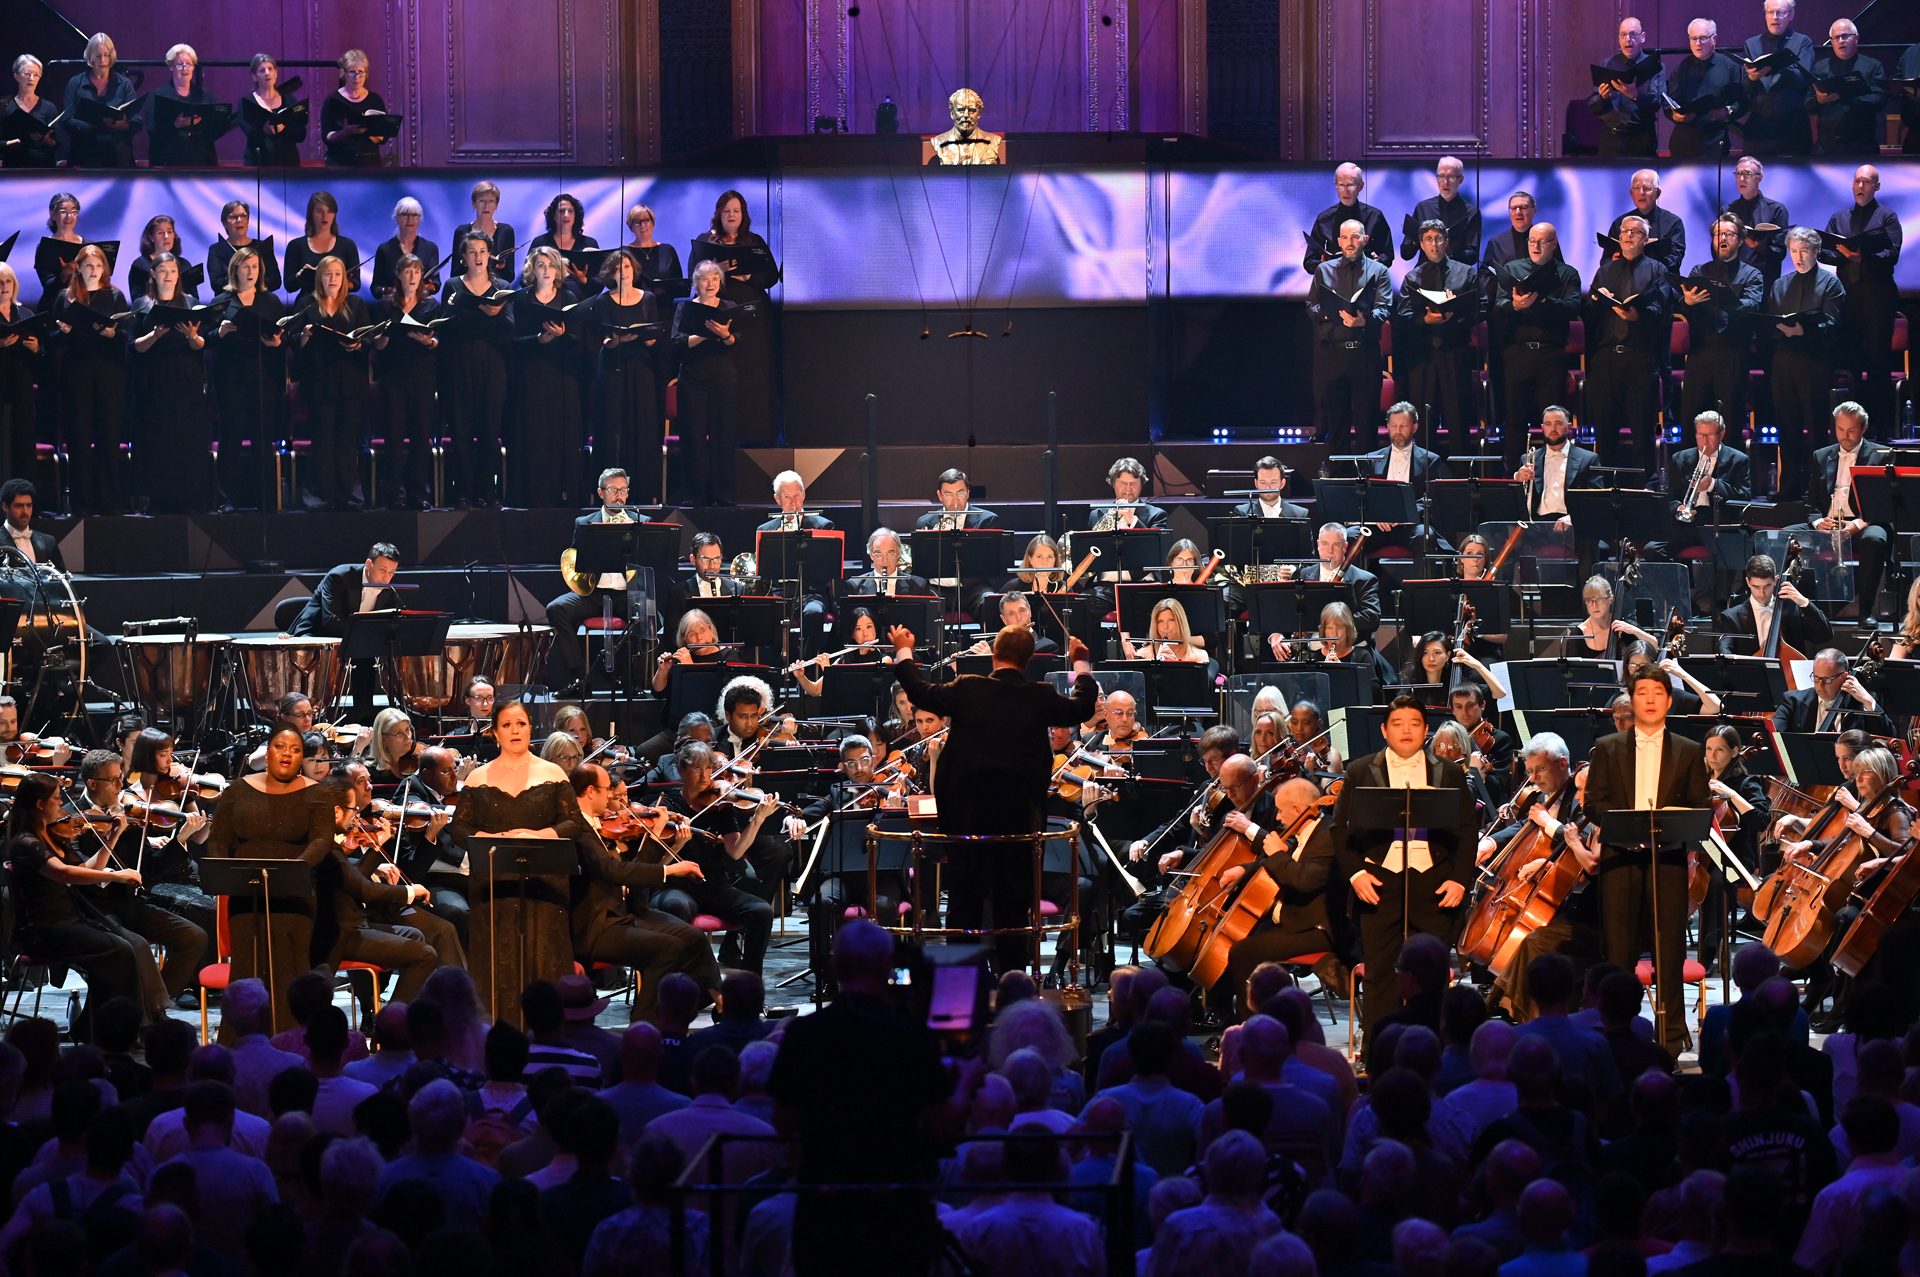 Εύφορο μουσικό καλοκαίρι στο Λονδίνο. Μέρος Β΄- Συναυλίες στο πλαίσιο των BBC Proms (Requiem του Verdi με τη Συμφωνική Ορχήστρα του BBC, Bruckner από τη Φιλαρμονική του BBC κι ένας σπάνιος Purcell),  ο Mahan Esfahany ερμηνεύει Bach στο Wigmore Hall, δύο όπερες του Verdi στη Βασιλική Όπερα